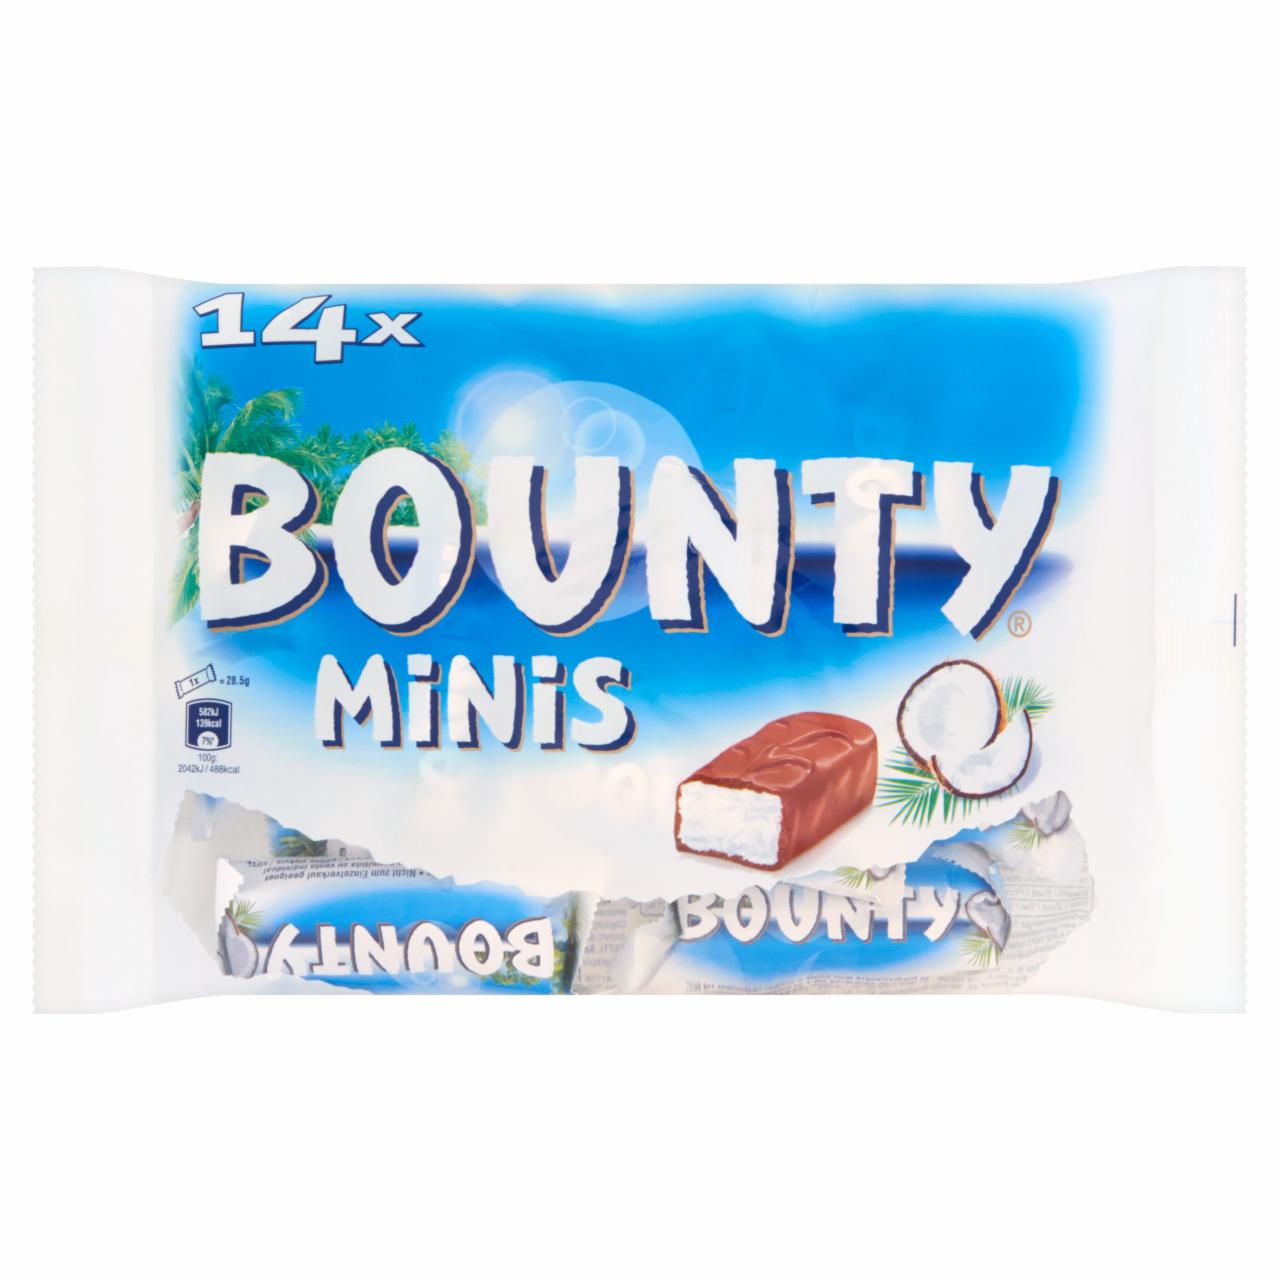 Zdjęcia - Bounty Minis Batoniki z nadzieniem kokosowym oblane czekoladą 443 g